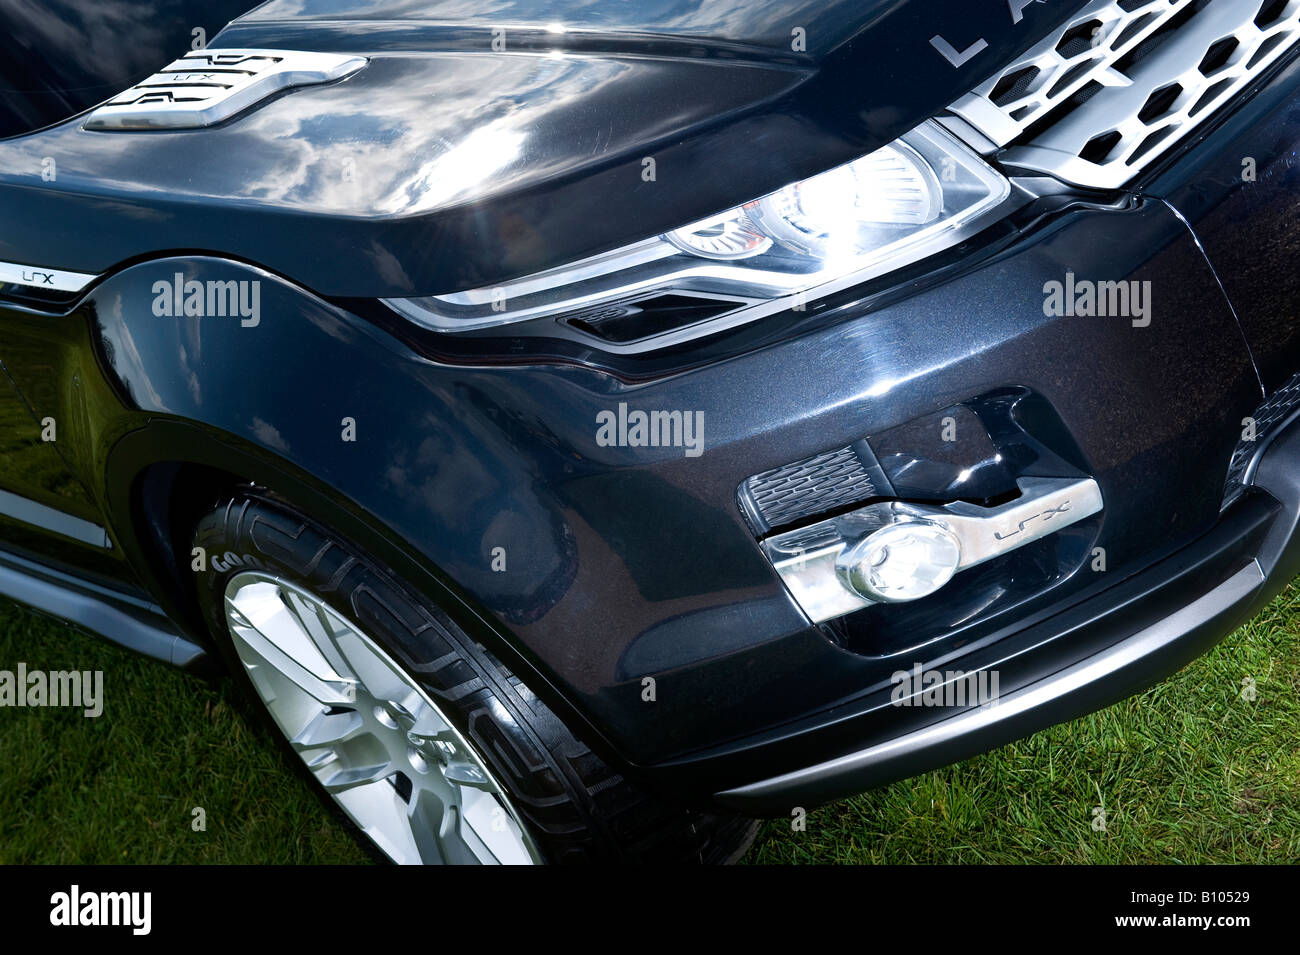 Land rover freelander LRX concept car 4wd awd Stock Photo